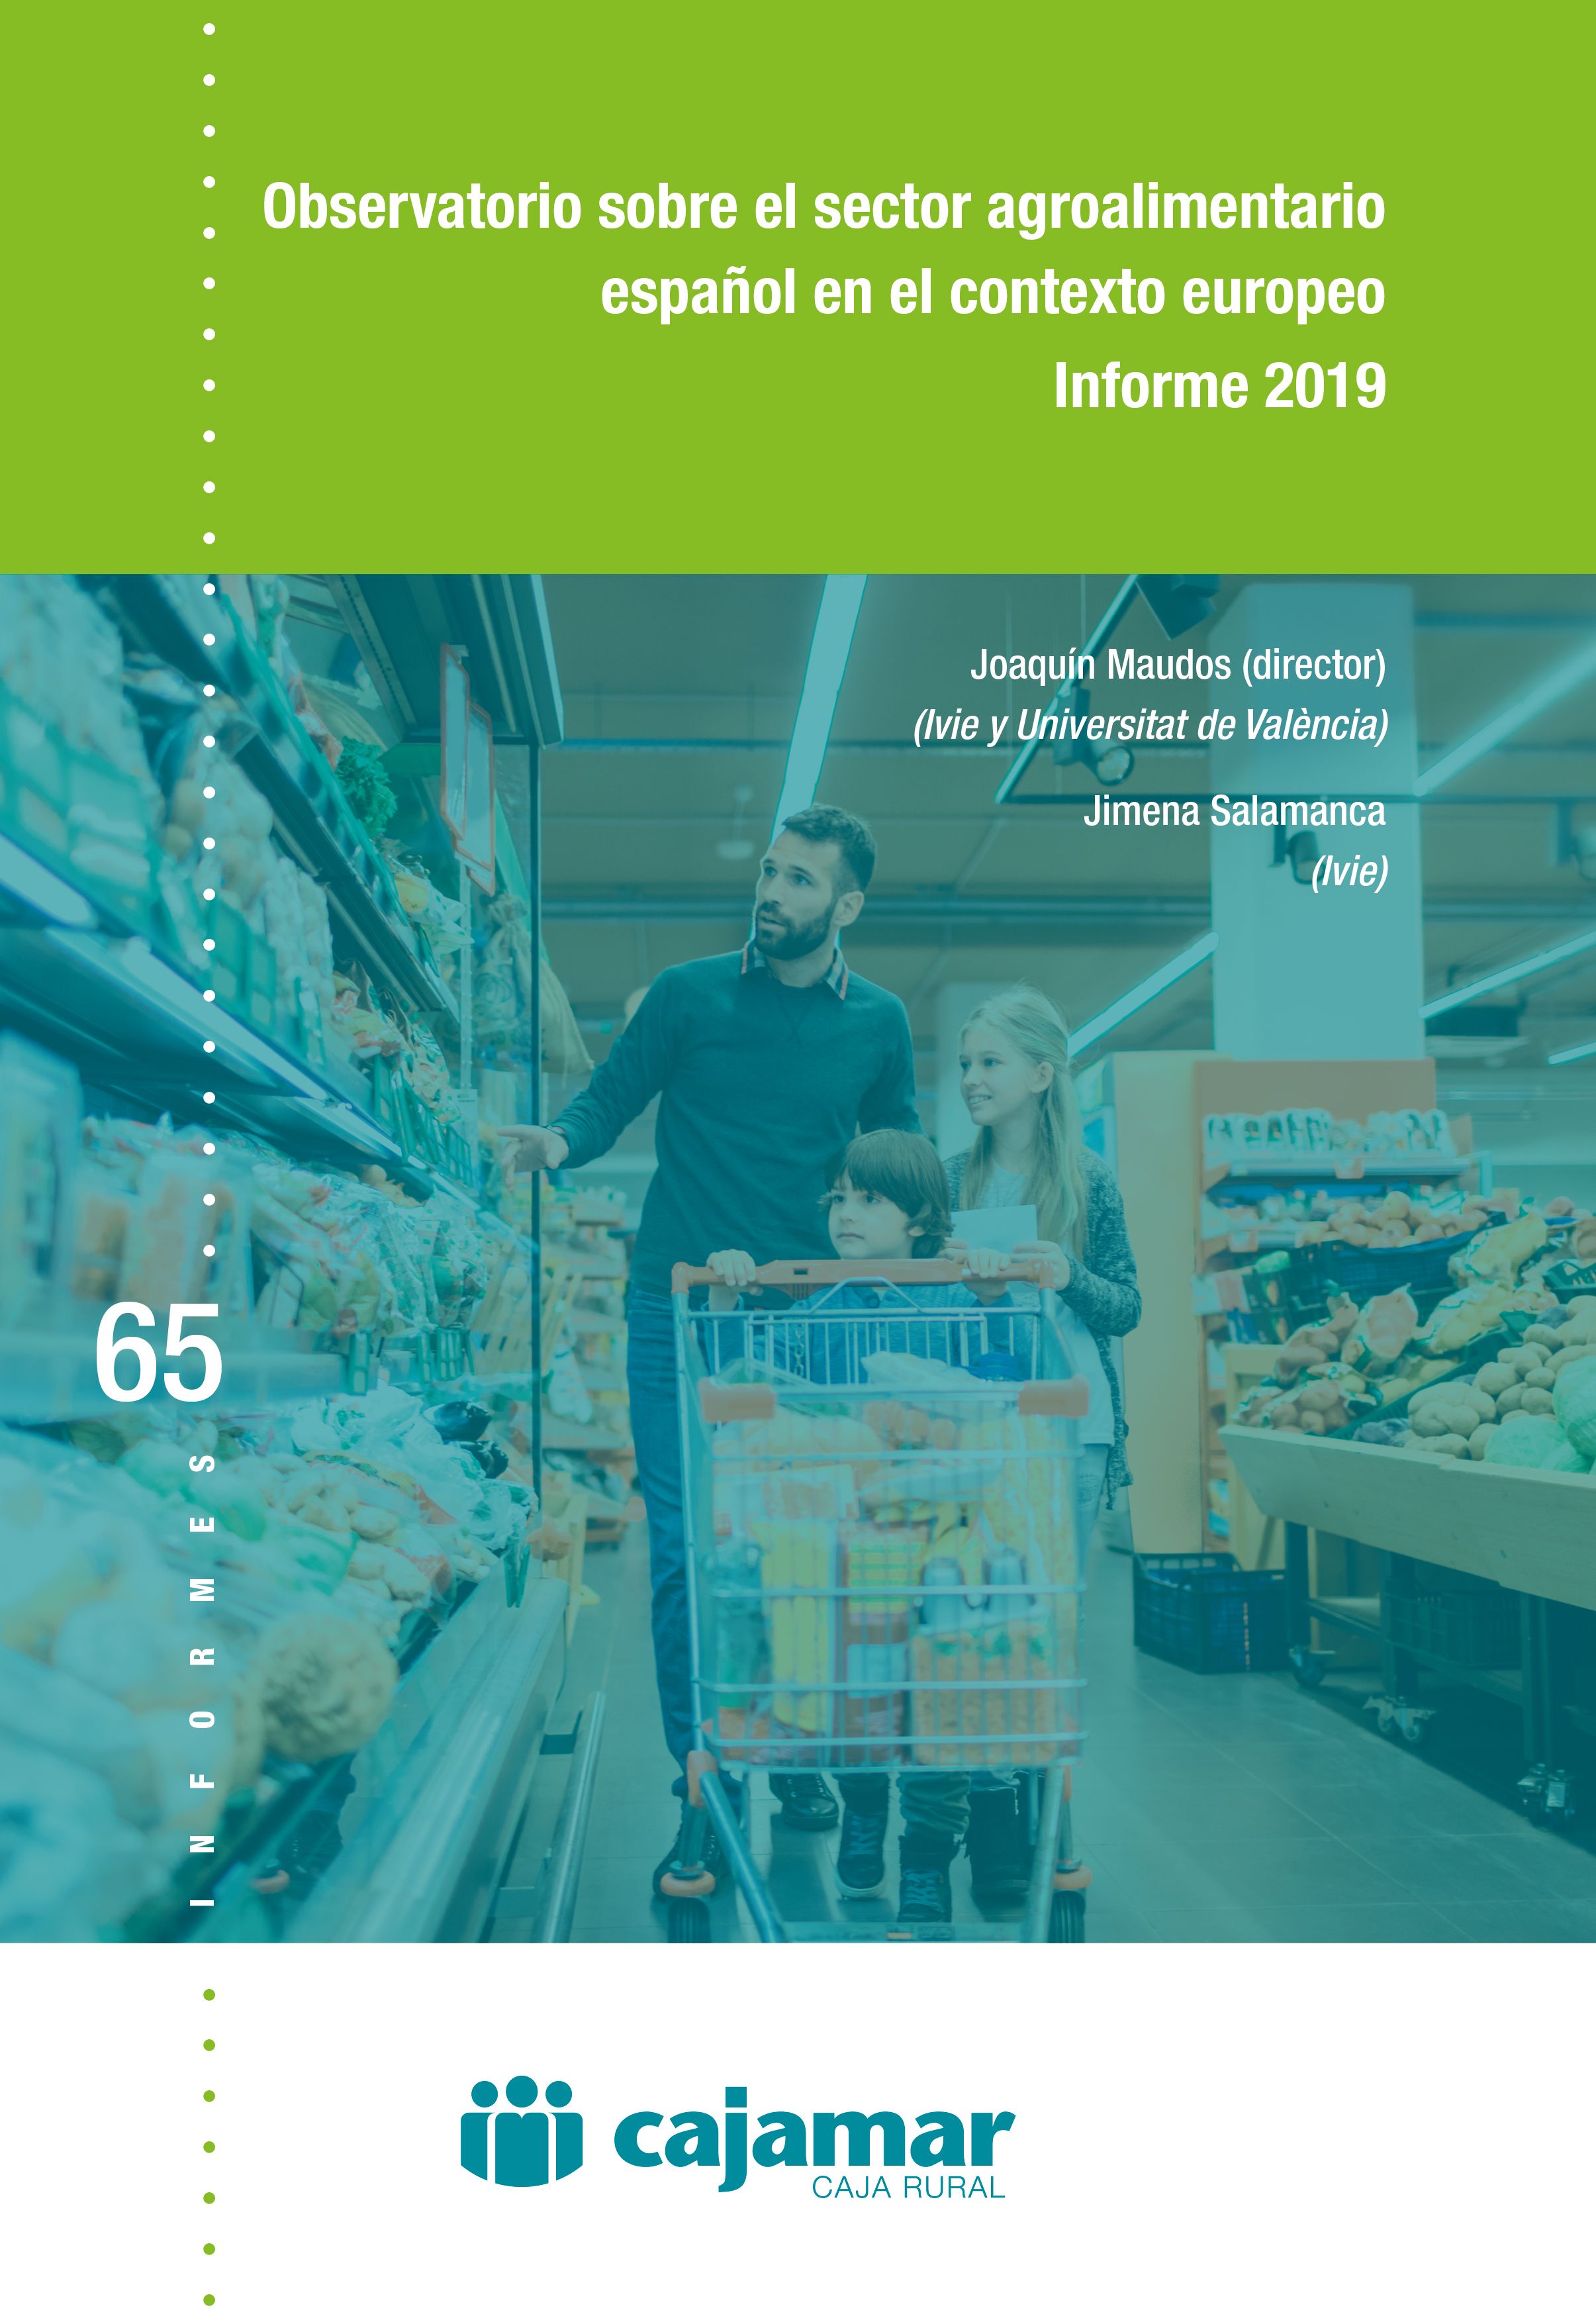 Portada del libro descargable "Observatorio sobre el sector agroalimentario español en el contexto europeo - Informe 2019"